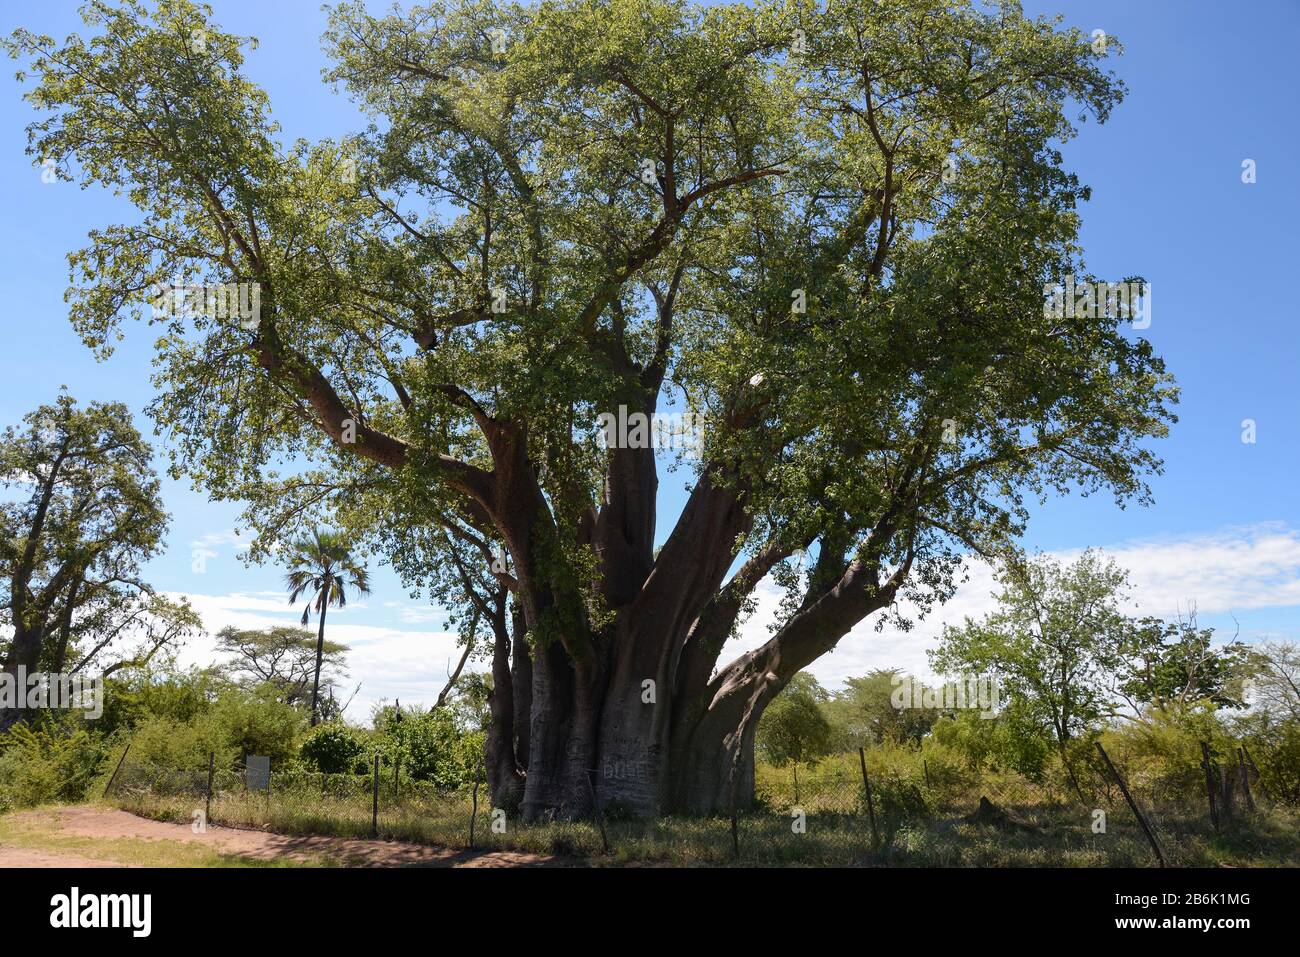 Baobab africano gigante cerca de las Cataratas Victoria, Zimbabwe de nombre científico Adansonia digitata. También se le conoce como el Big Tree por su enorme tamaño. Foto de stock